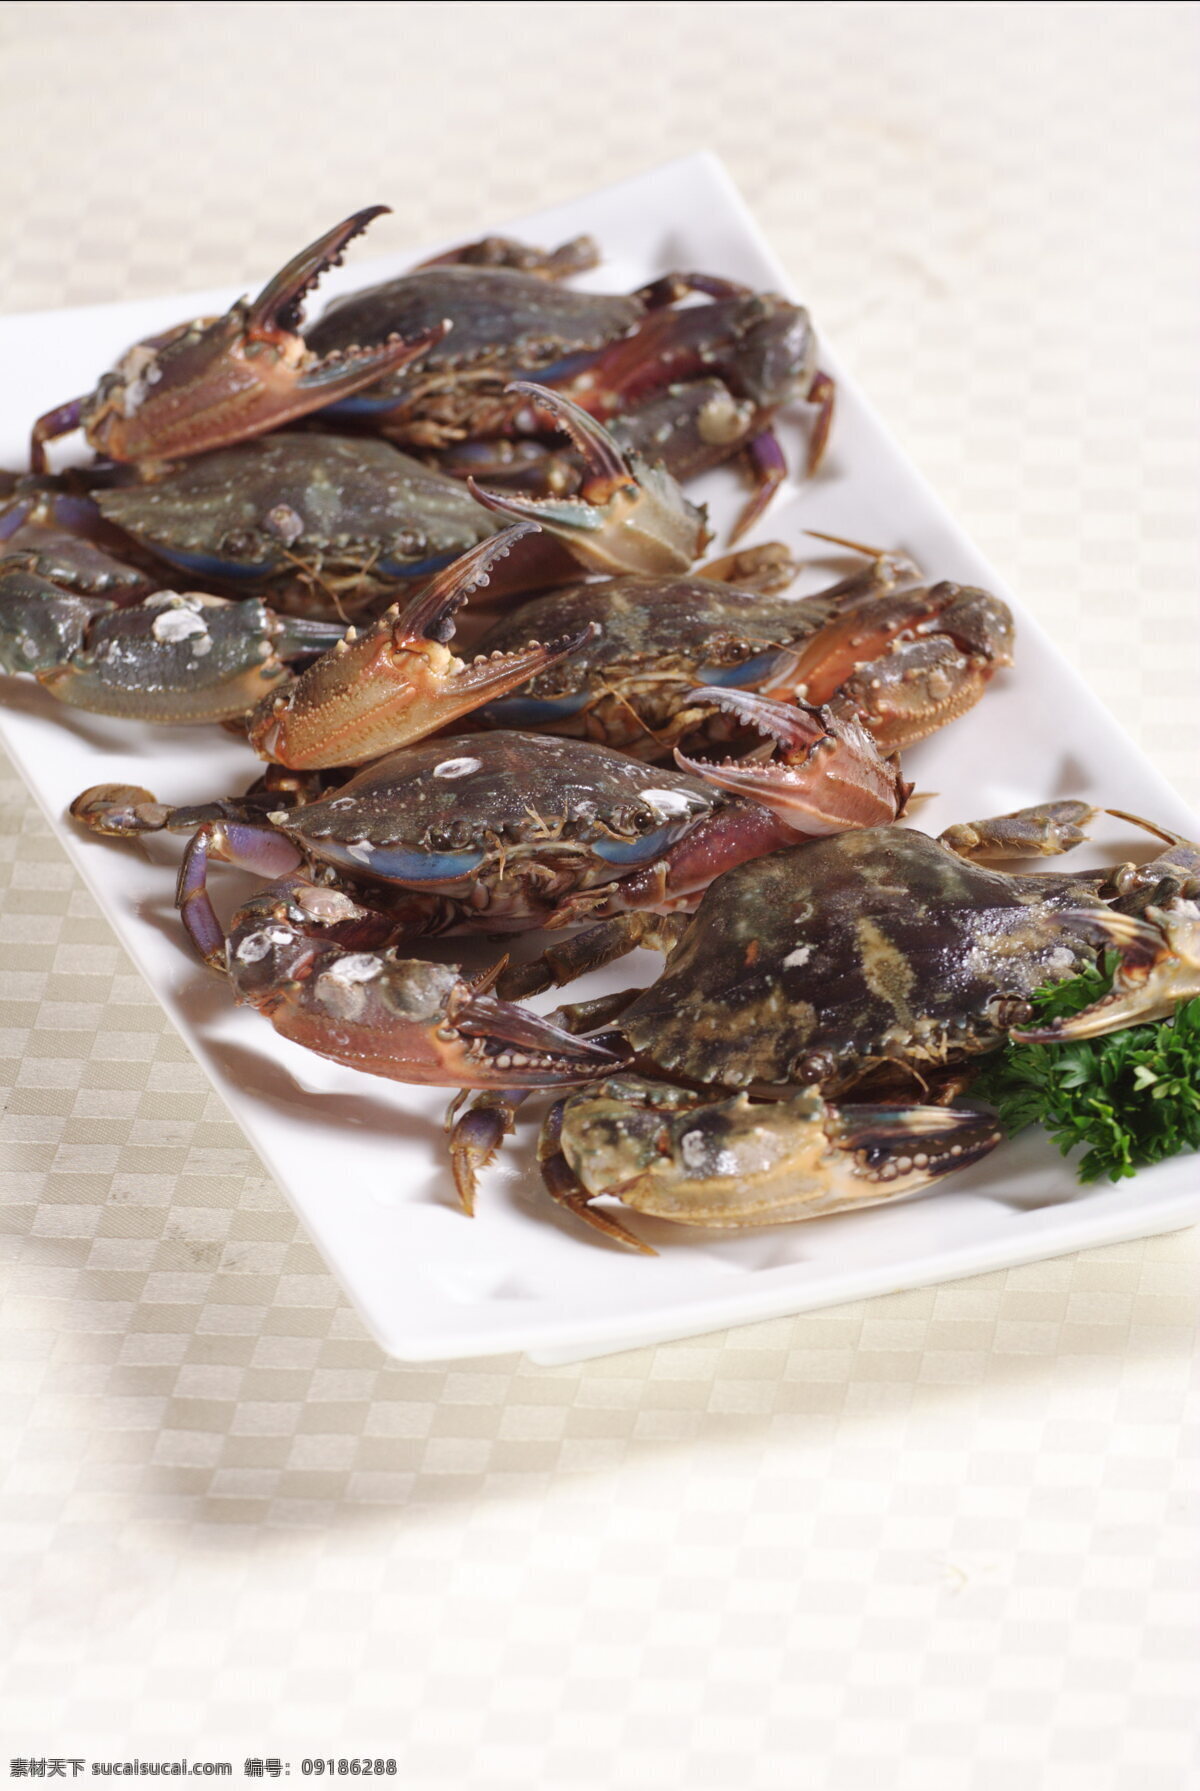 螃蟹 火锅 海鲜锅 海鲜火锅 海蟹 鲜美 新鲜 食材 海产品 海洋生物 节肢动物 食物原料 餐饮美食